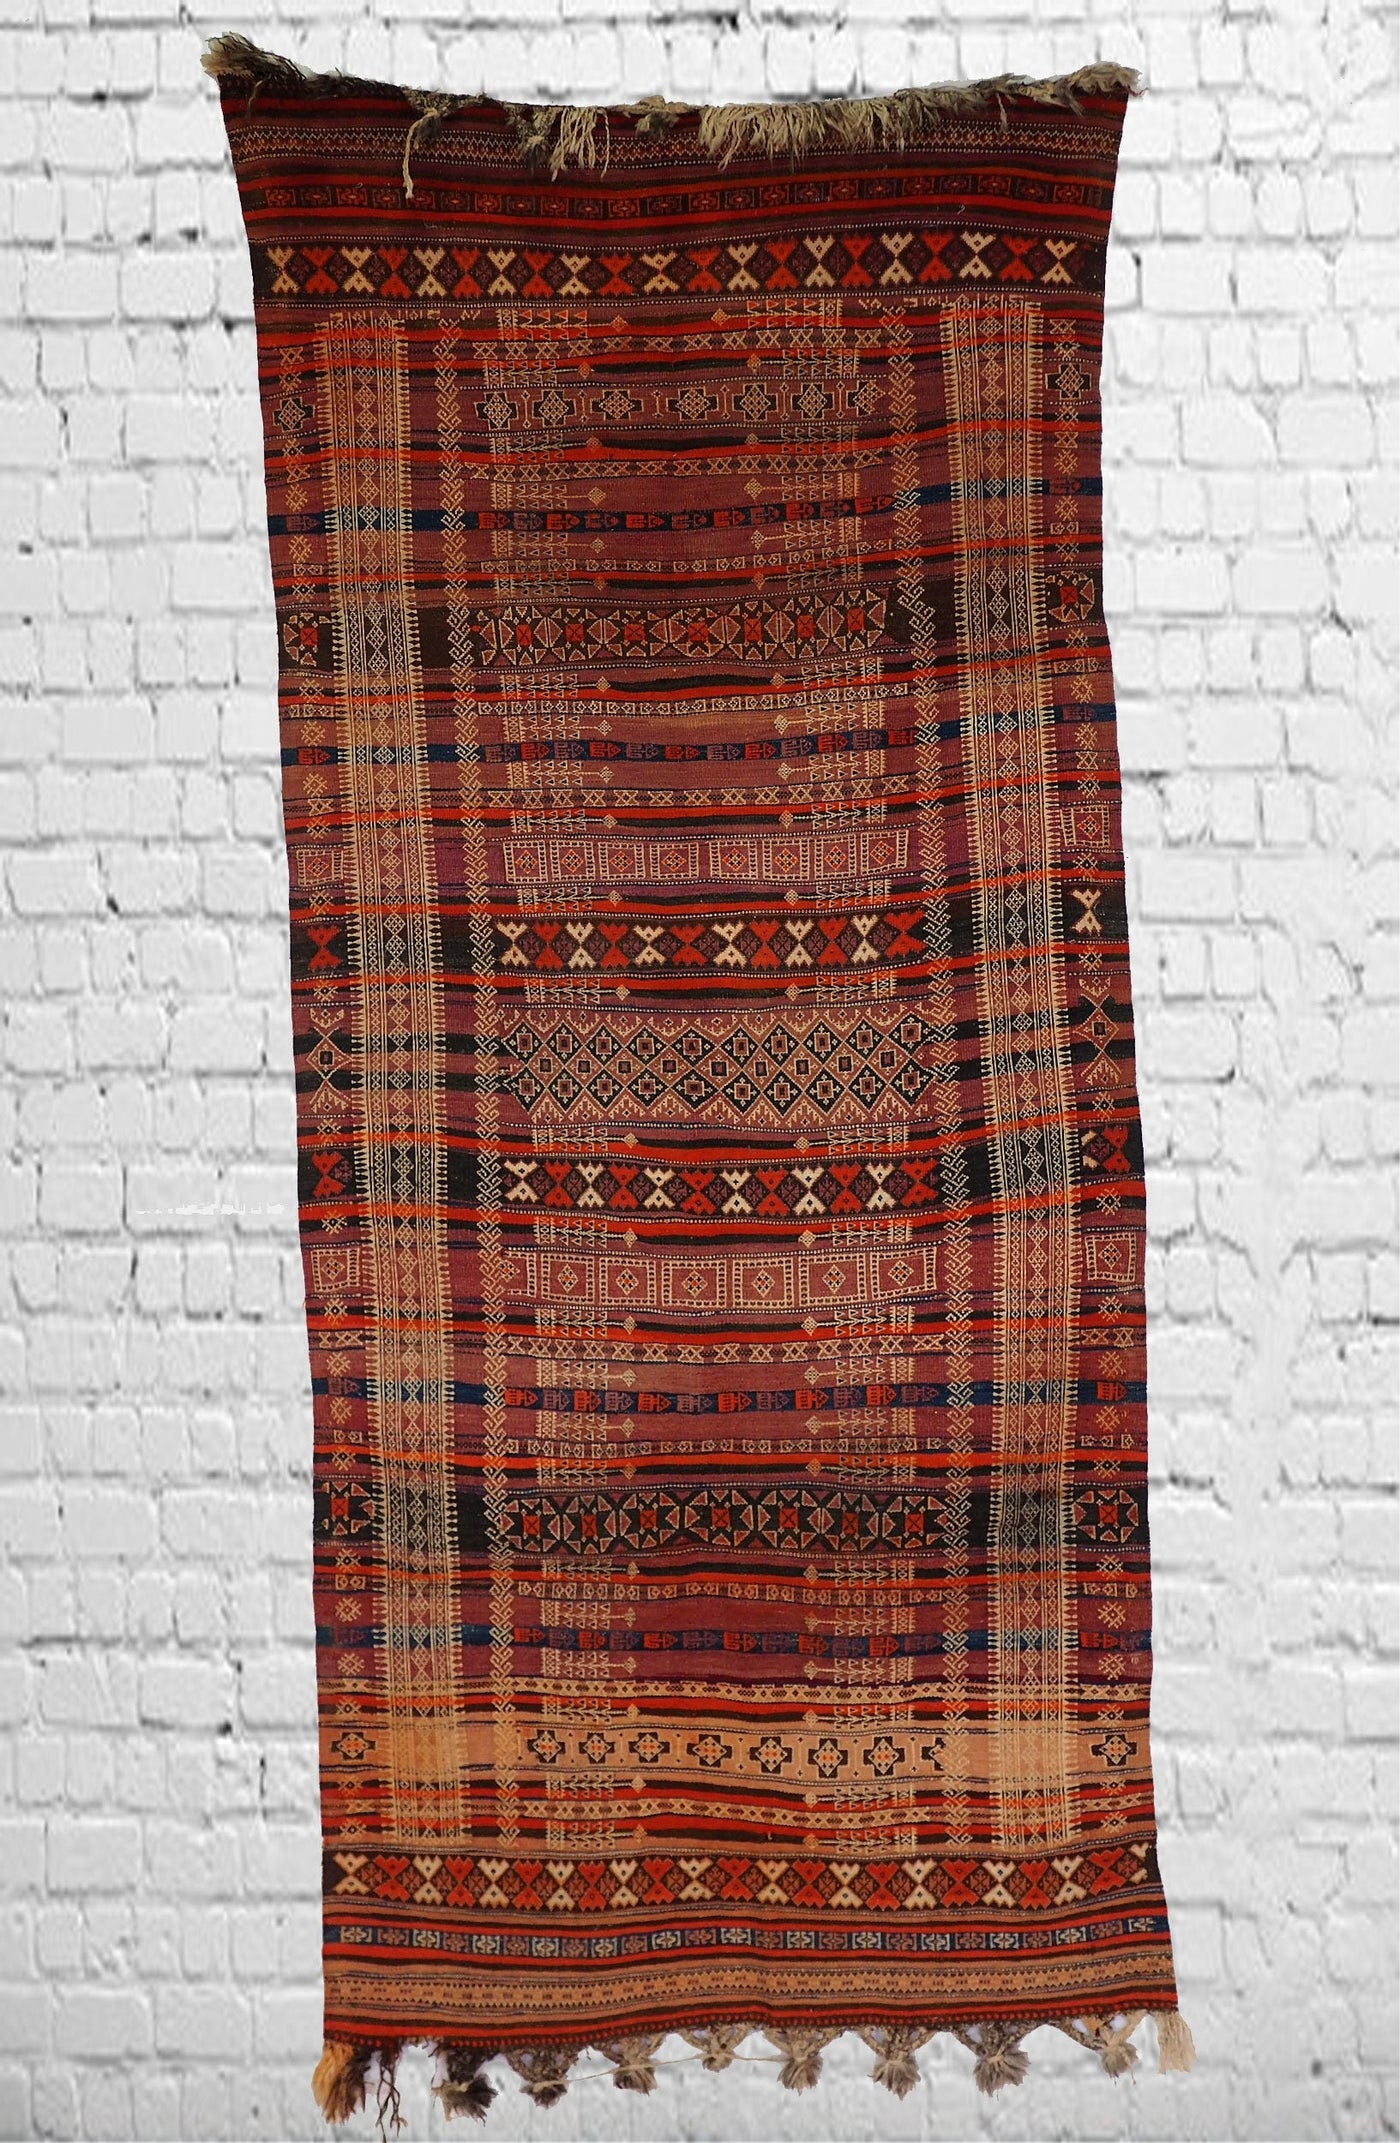 300x132 cm Antik orient handgewebte Teppich Nomaden Balucsumakh kelim afghan Beloch kilim Nr-19/PK-14  Orientsbazar   